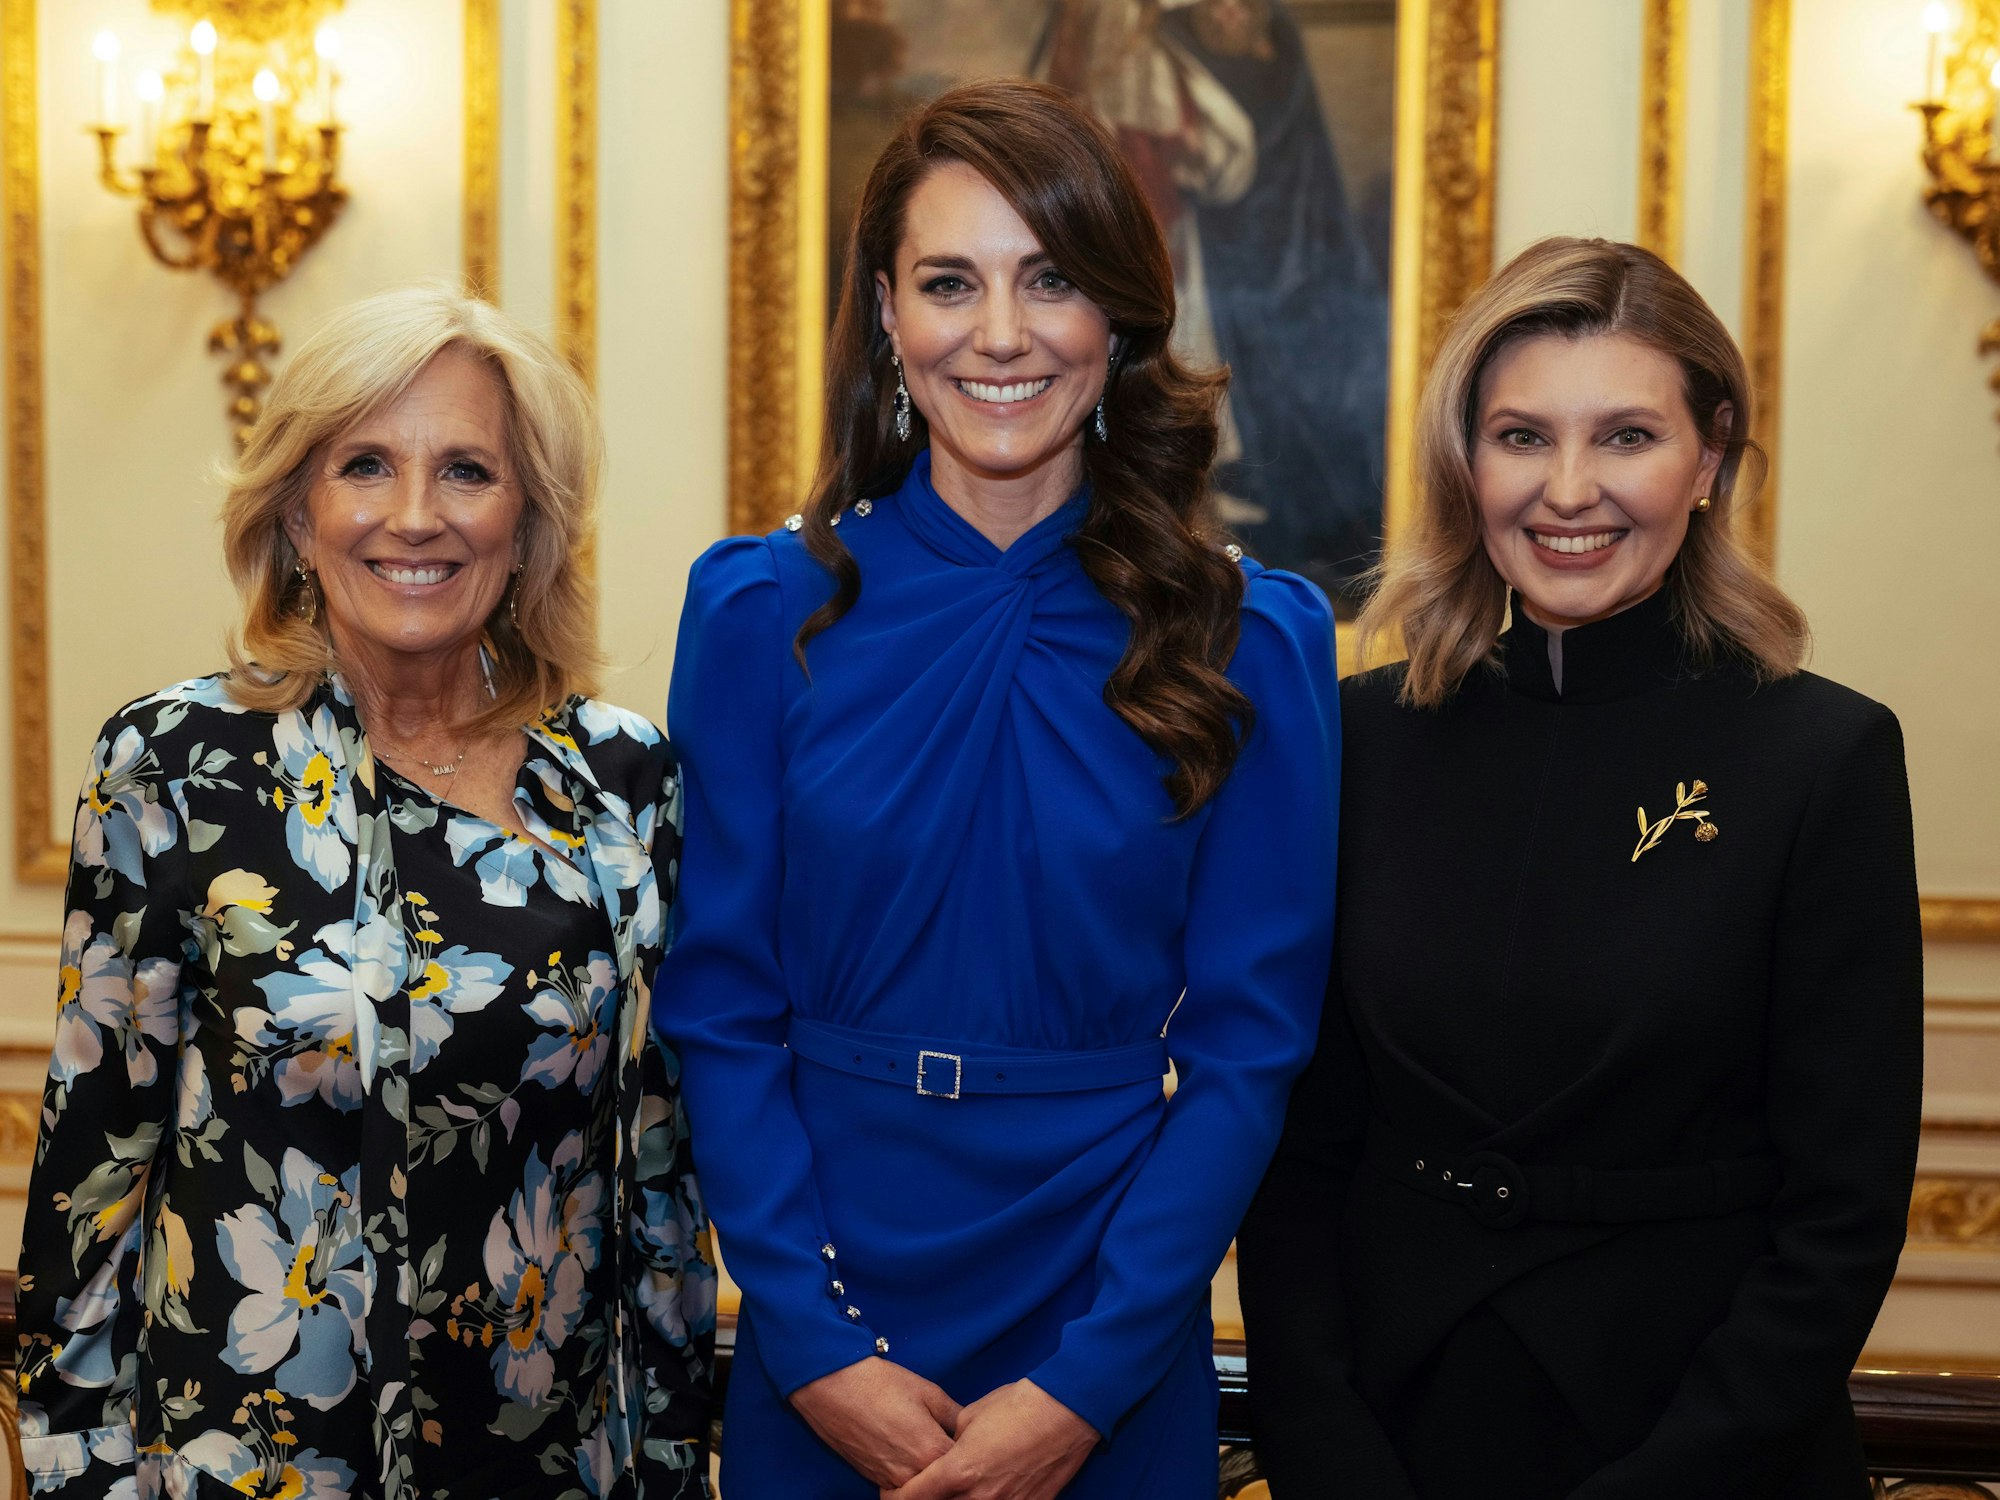 Kate (m), Prinzessin von Wales, steht neben Jill Biden (l), First Lady der USA, und Olena Zelenska, First Lady der Ukraine, während eines Empfangs im Buckingham Palace für ausländische Gäste